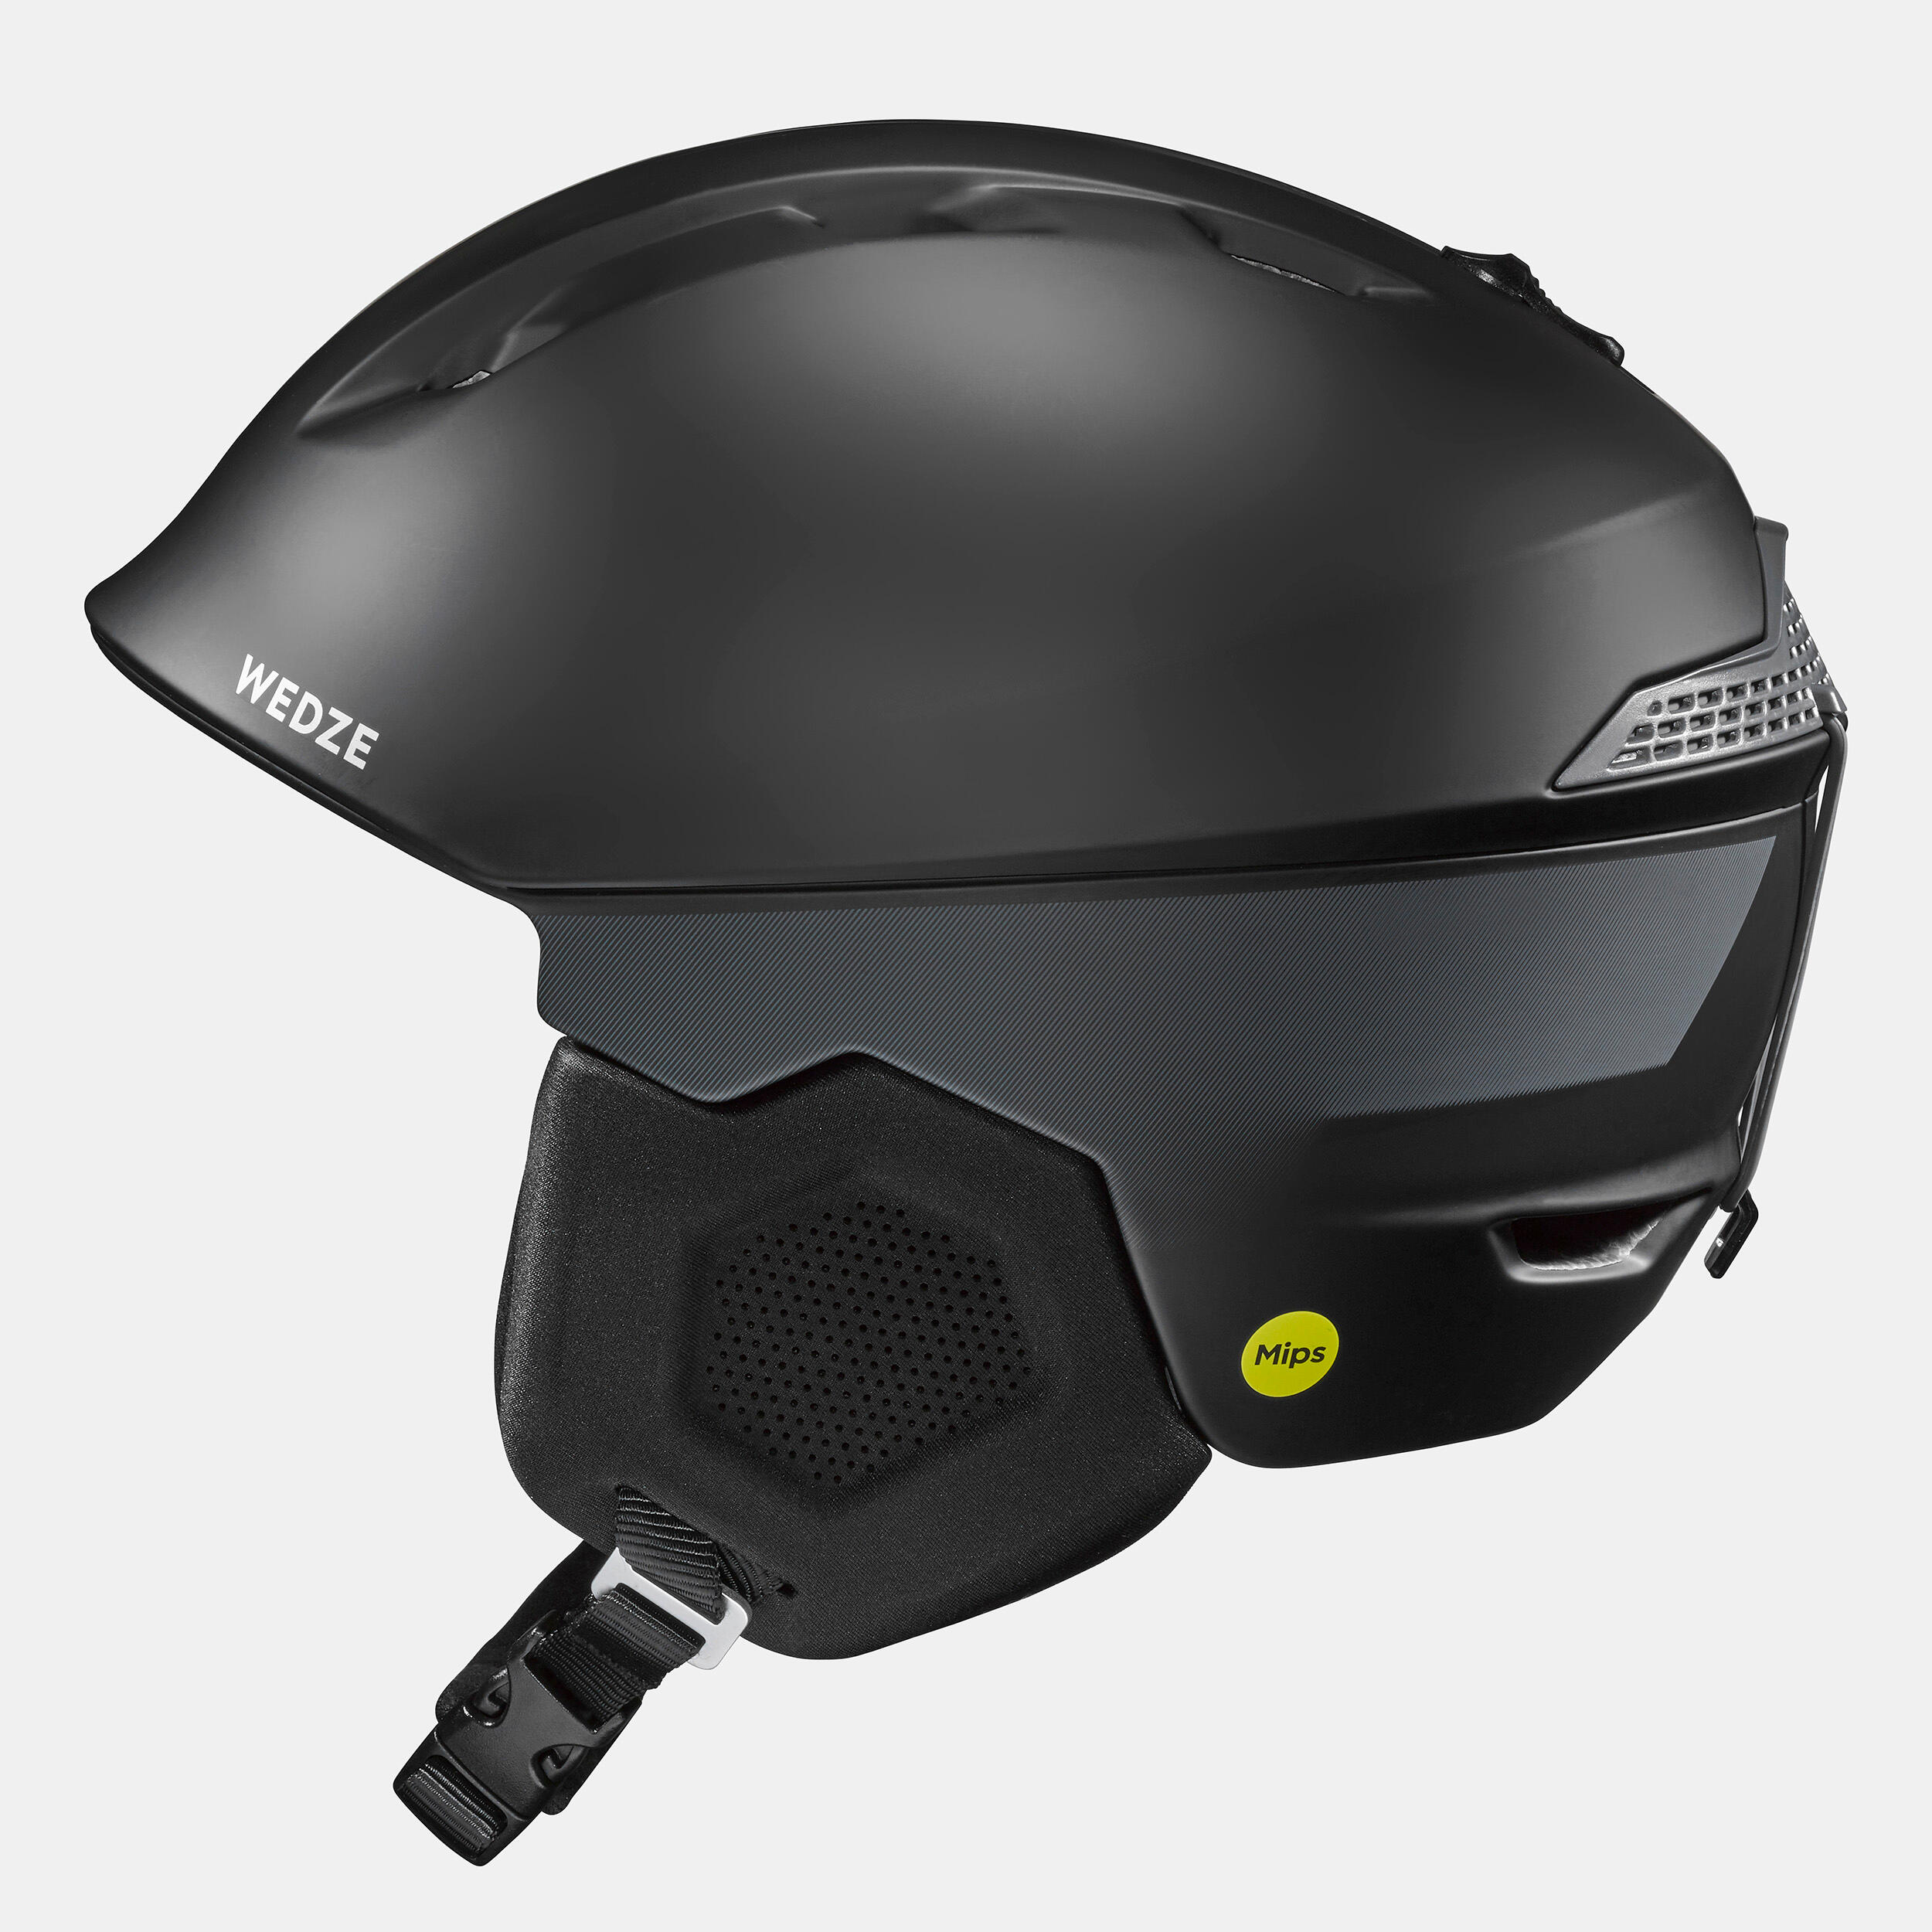 Ski helmet - PST 900 MIPS - BLACK 5/17